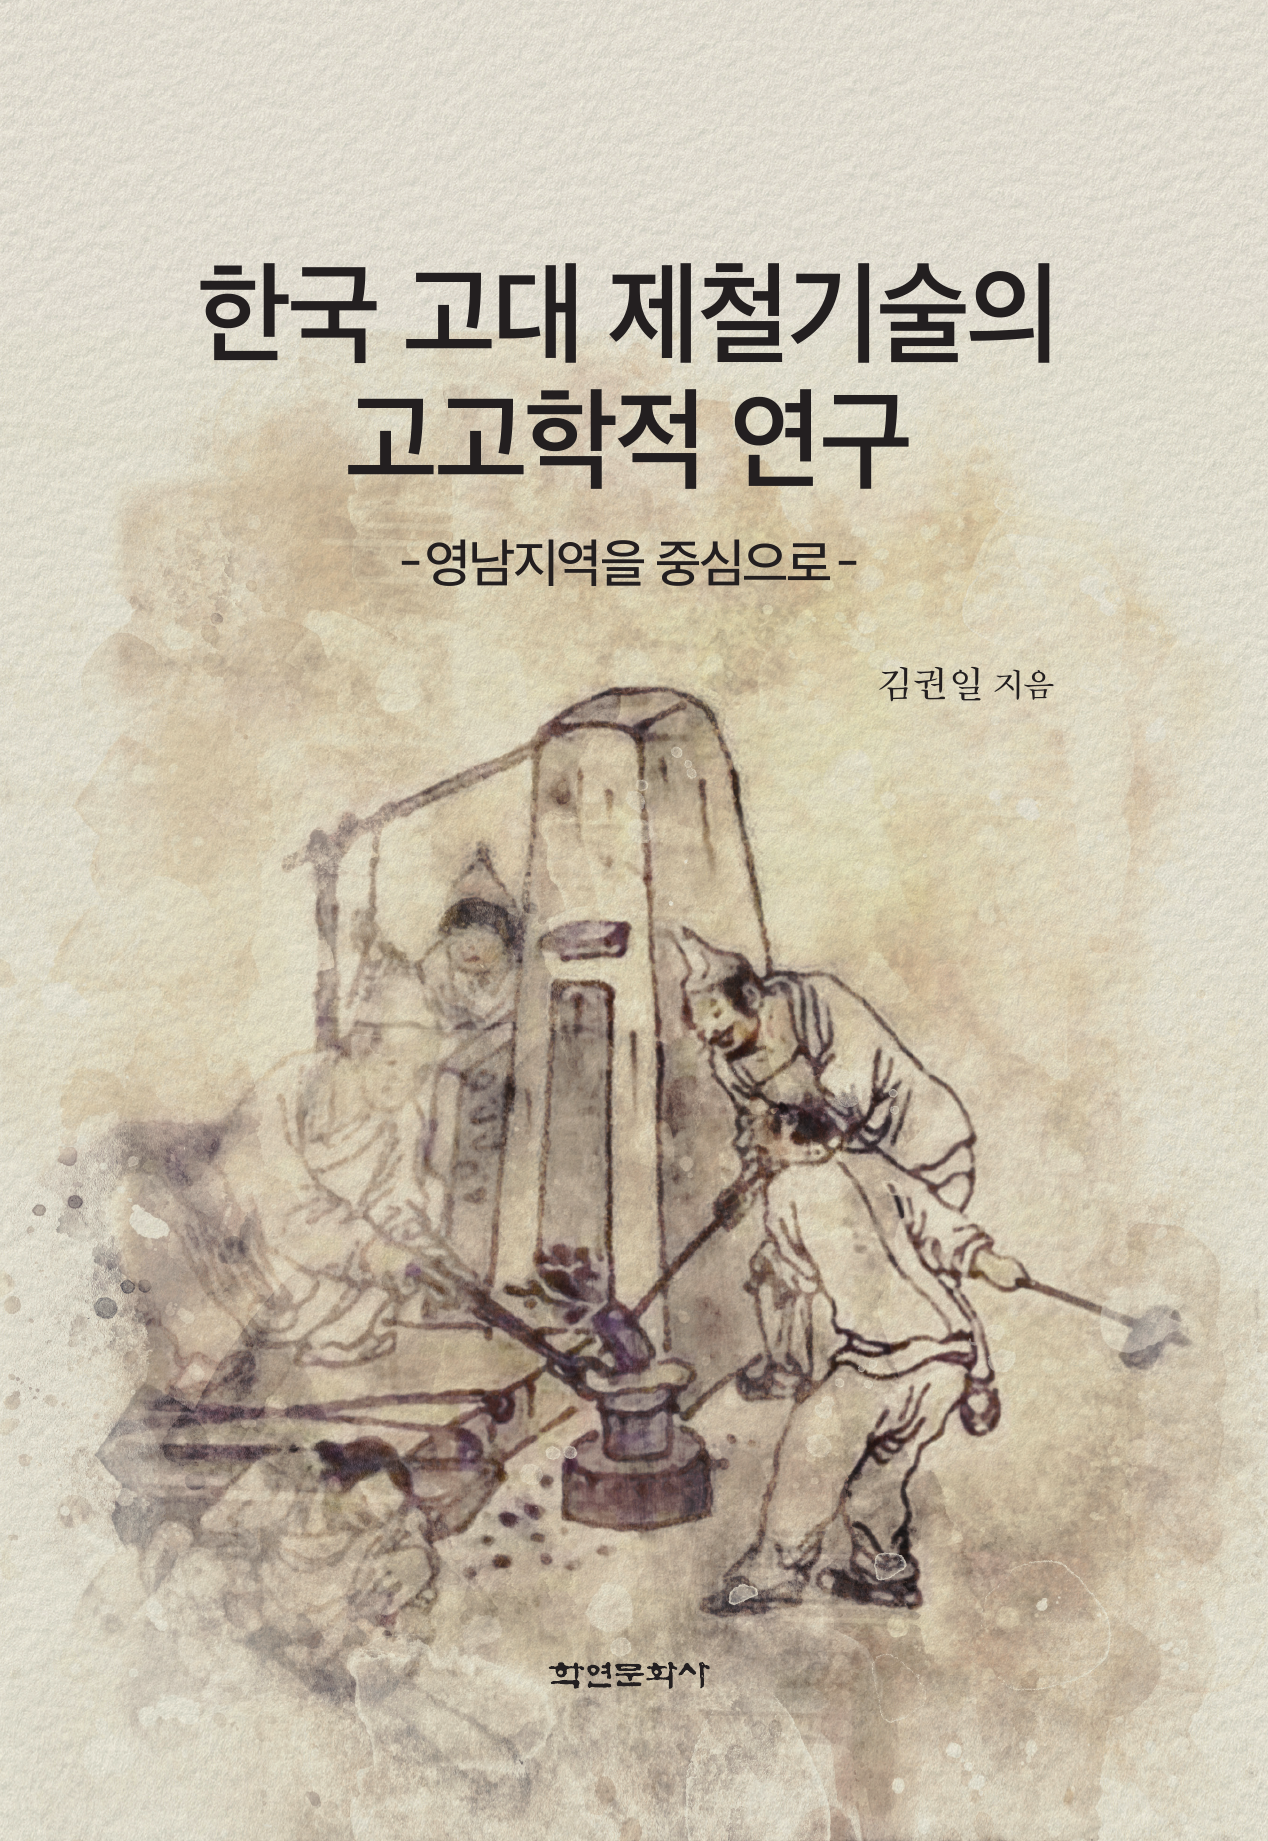 한국 고대 제철기술의 고고학적 연구 (영남지역을 중심으로)